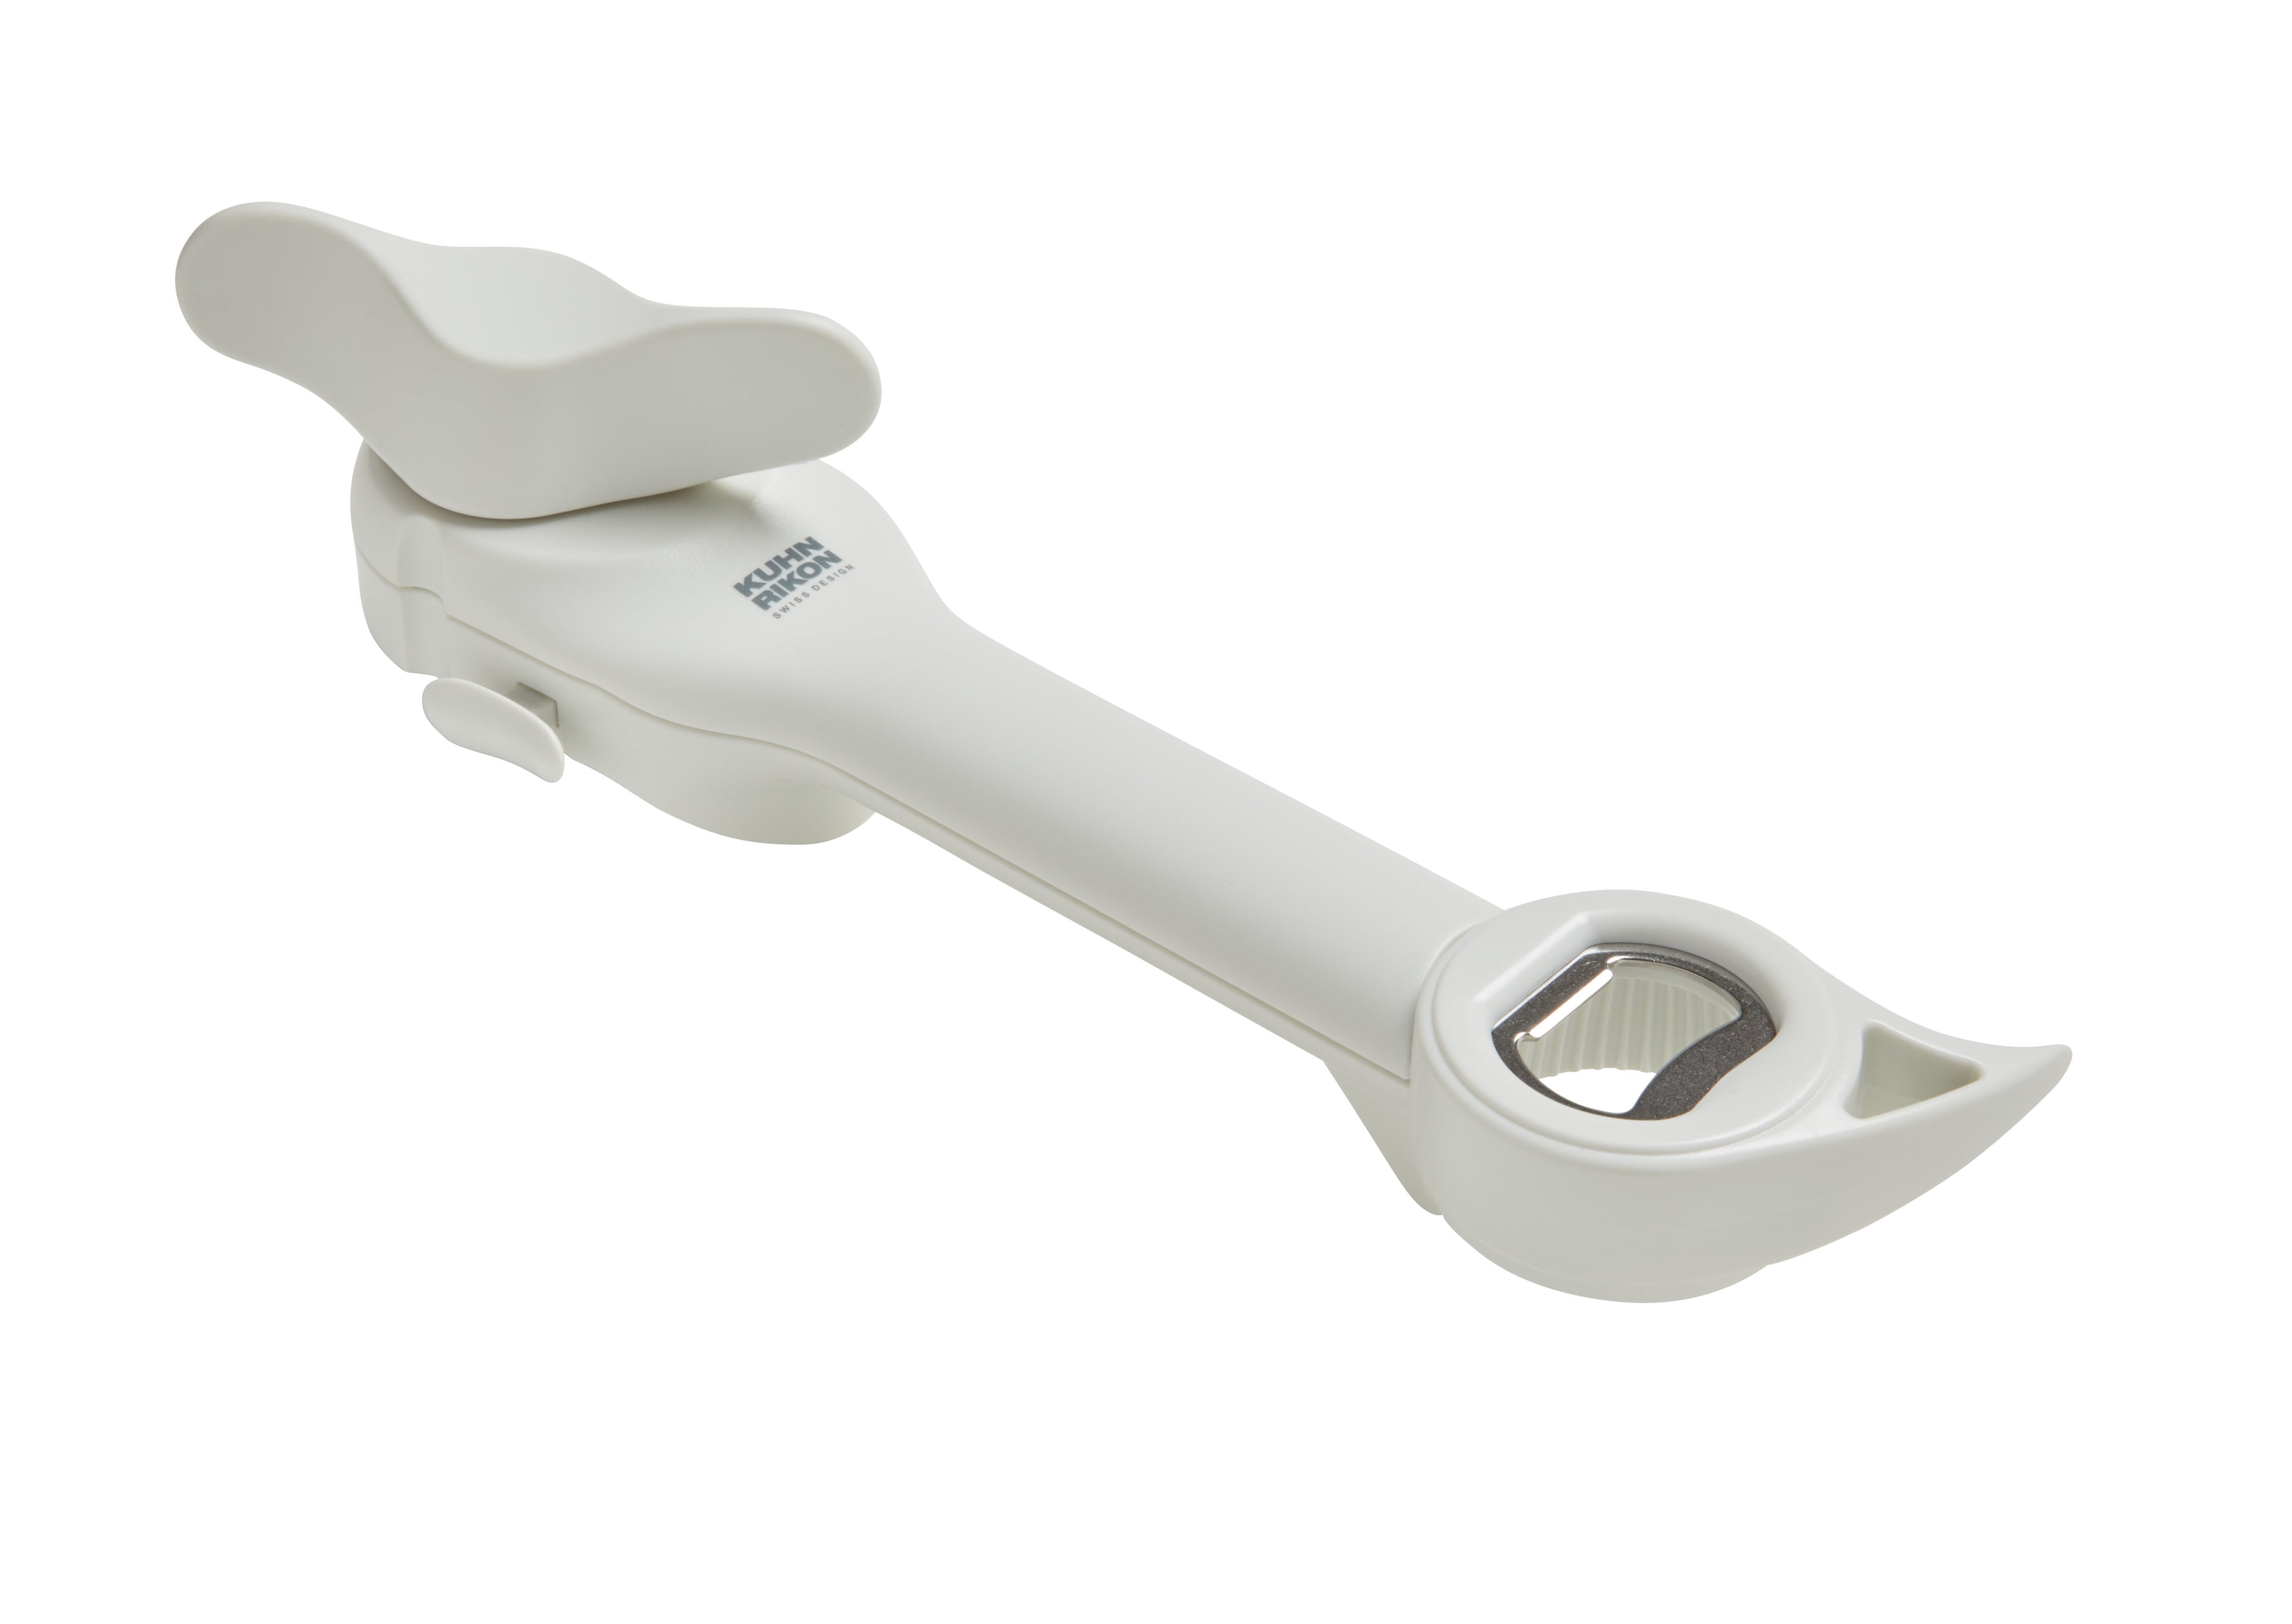 KUHN RIKON White Handheld Strain-Free Gripper Opener for Jars and Bottles